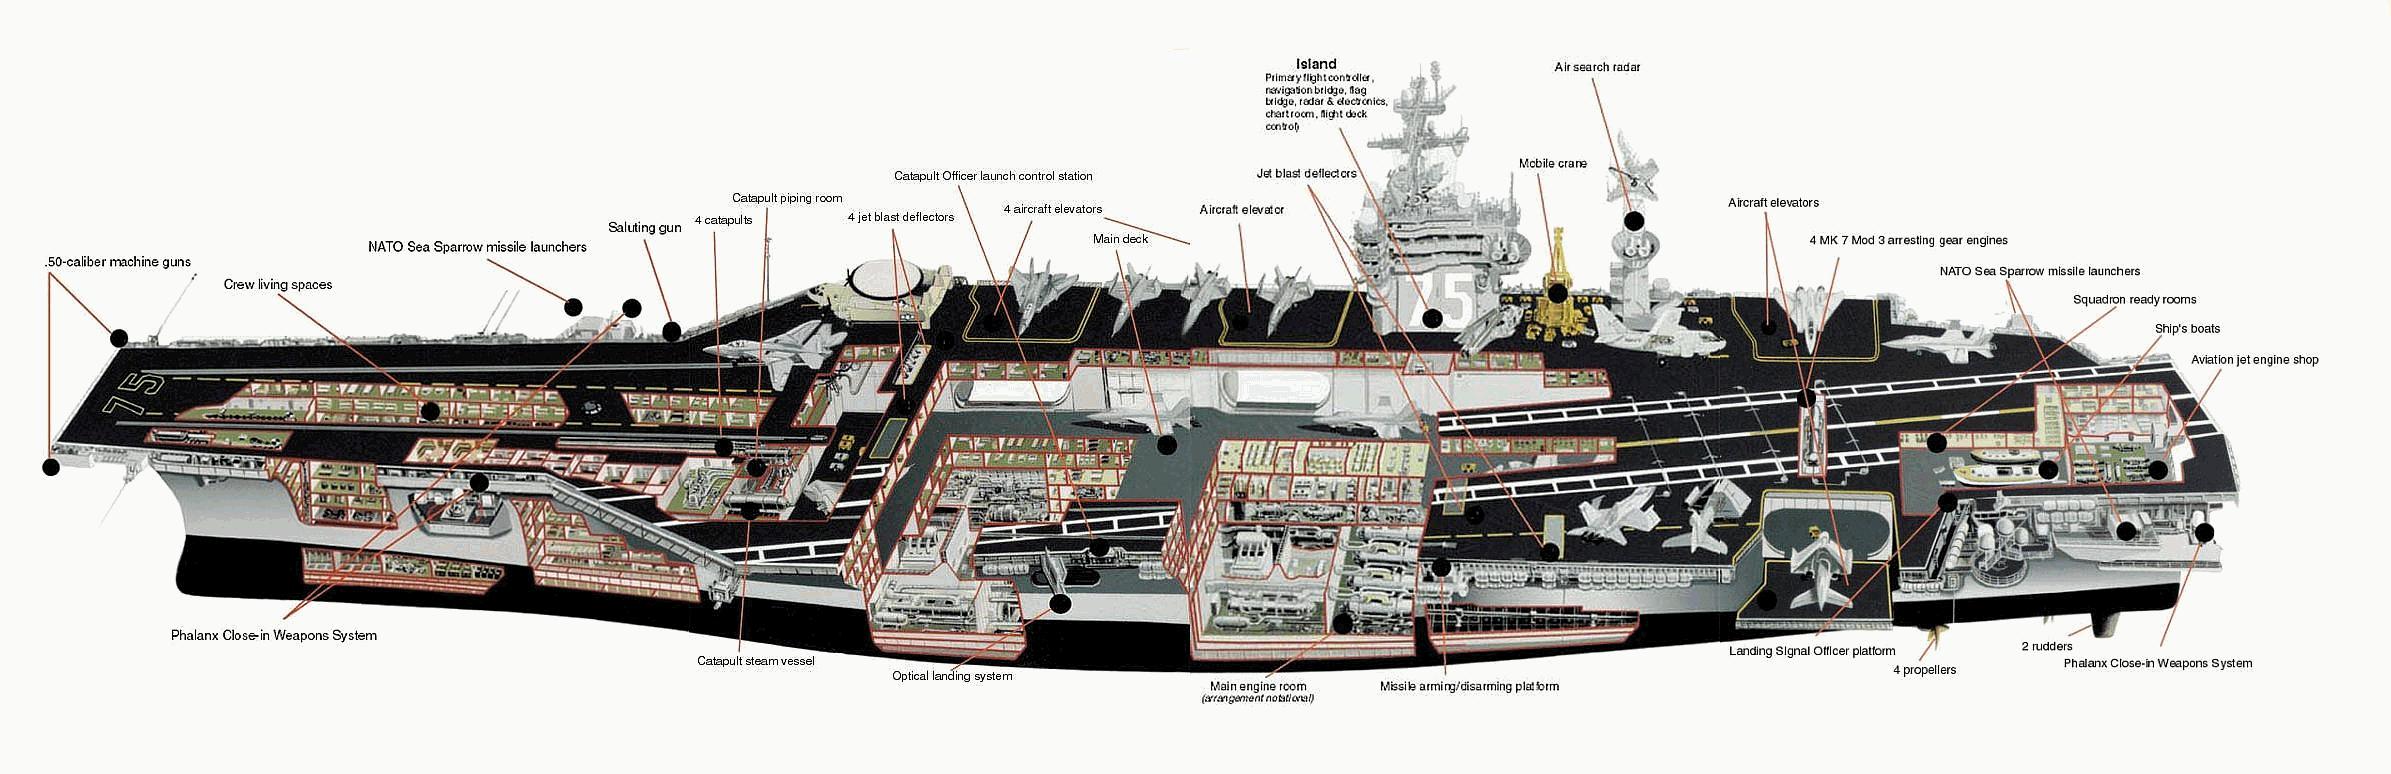 http://realitypod.com/wp-content/uploads/2012/01/USS-Nimitz-Aircraft-Carrier.jpg